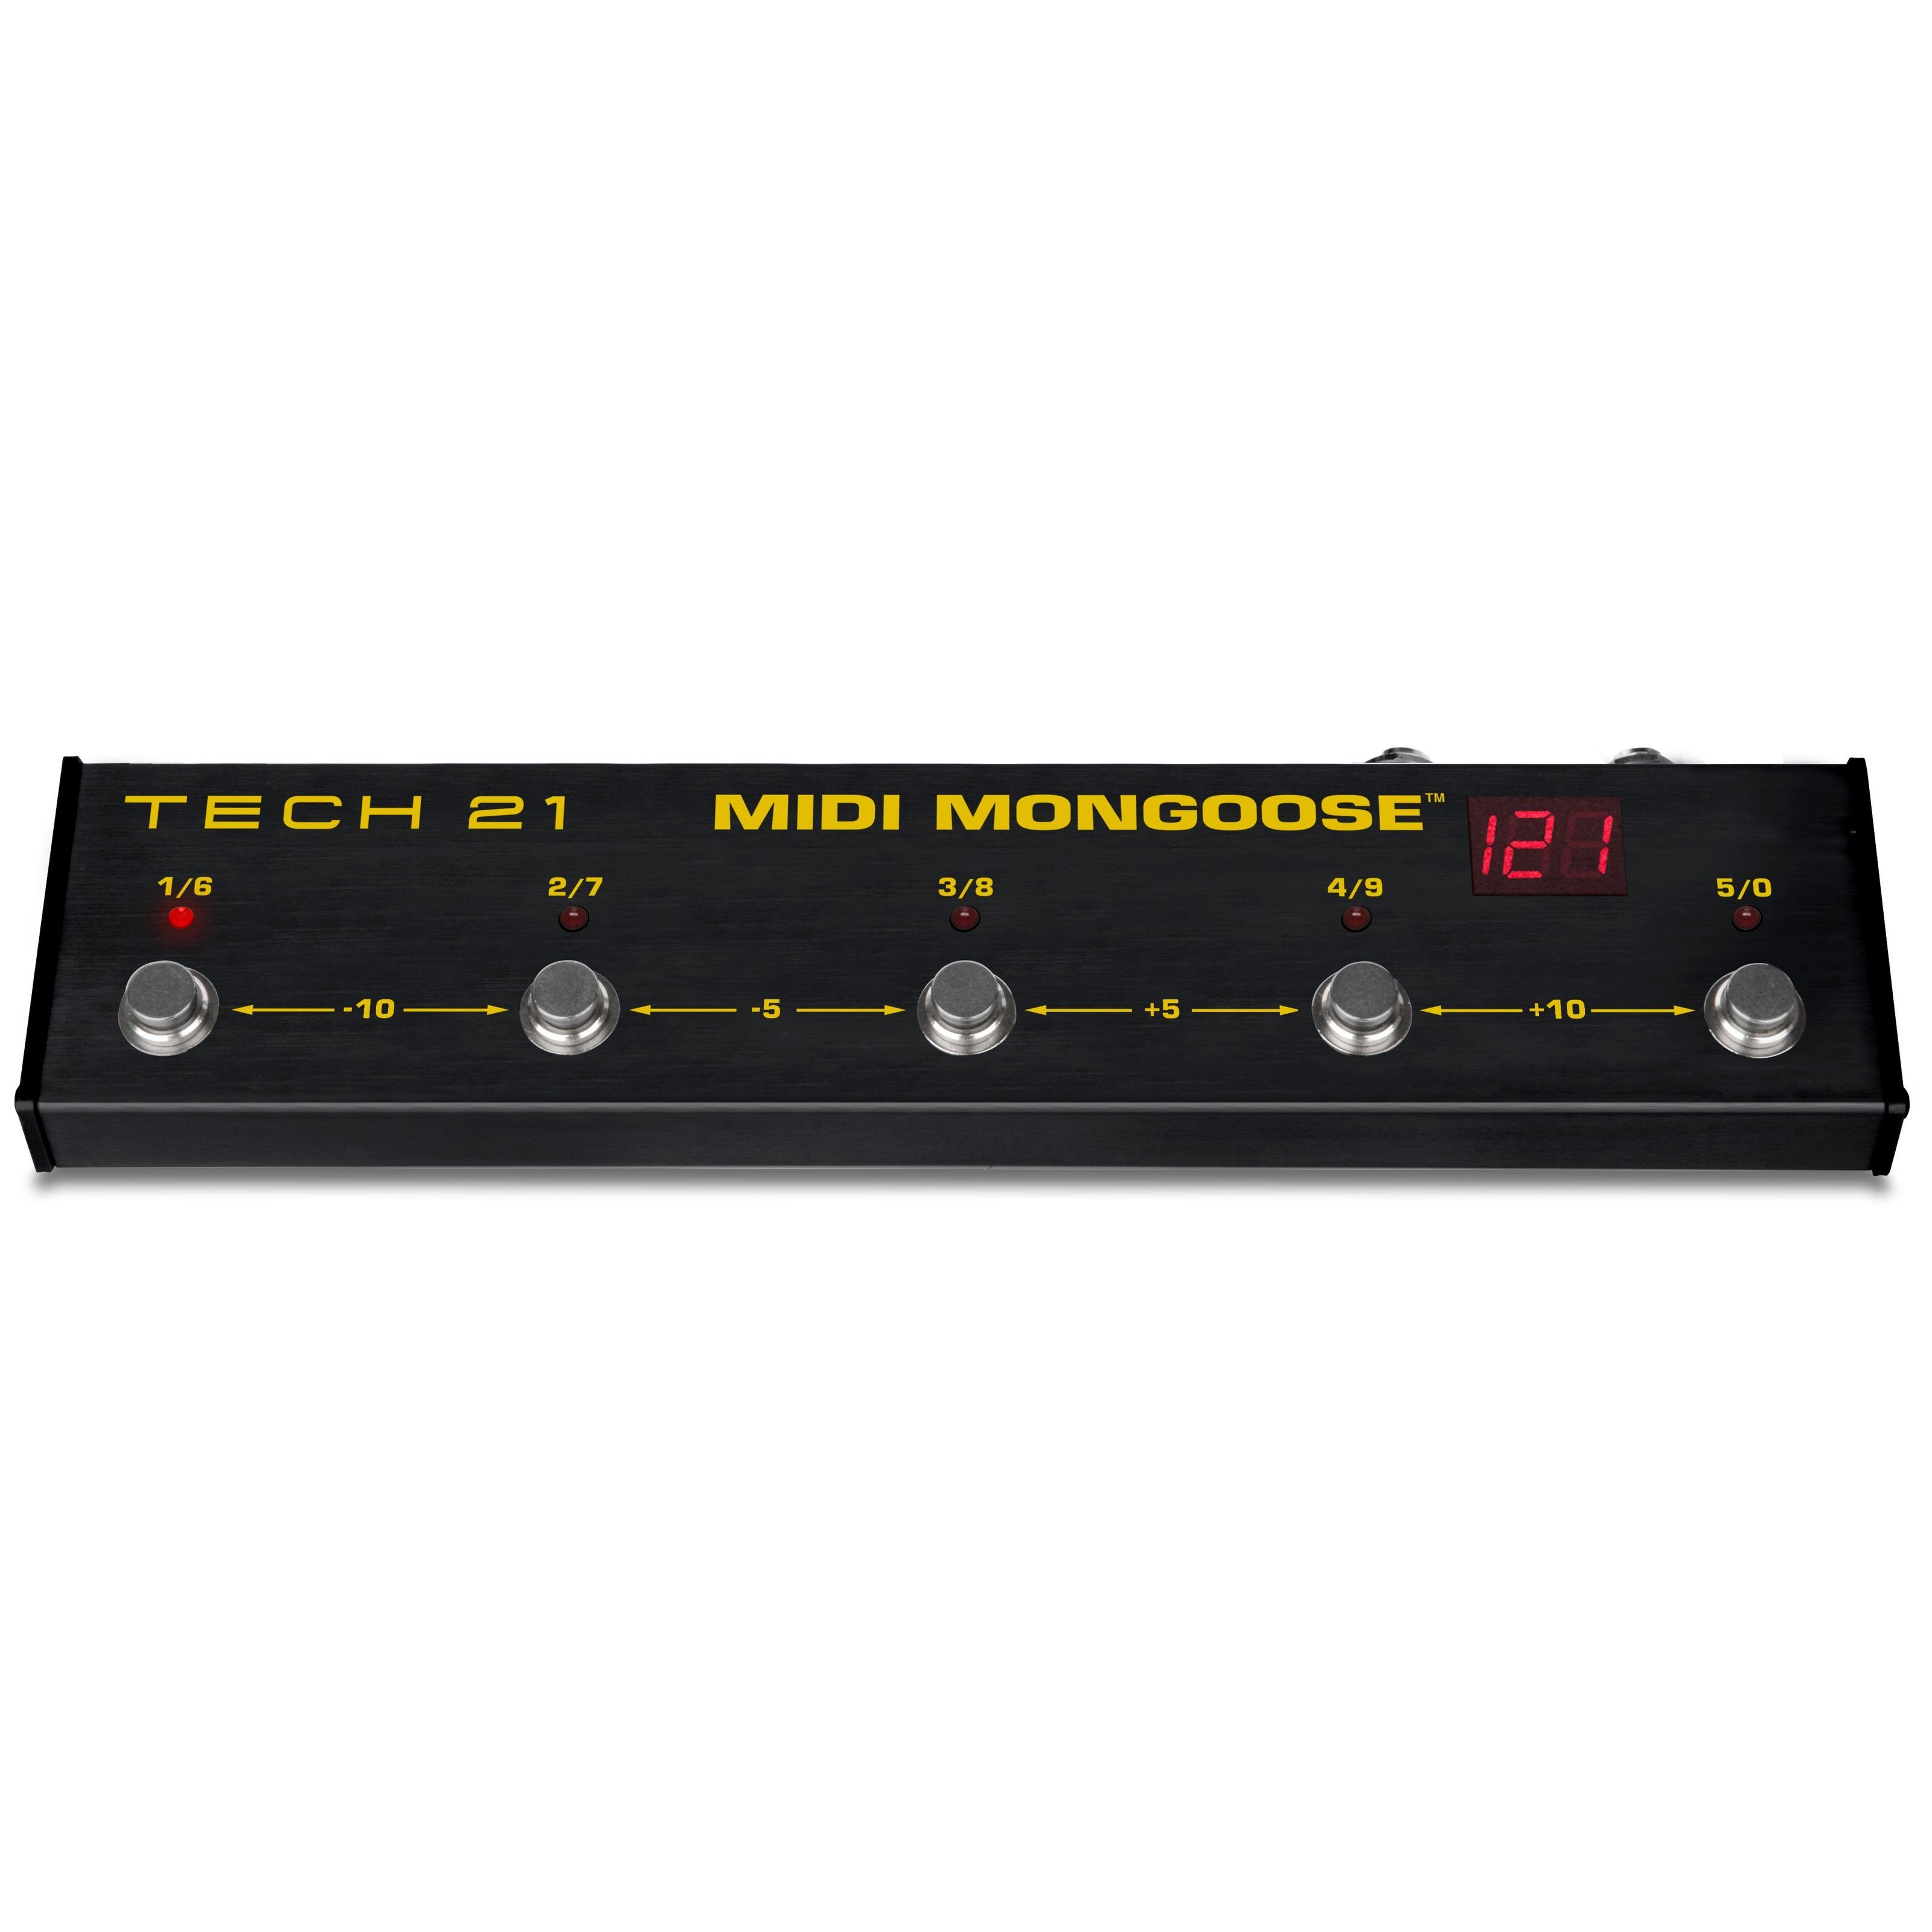 Tech 21 Verstärker (MIDI Mongoose - MIDI Fußschalter für Gitarrenverstärker)